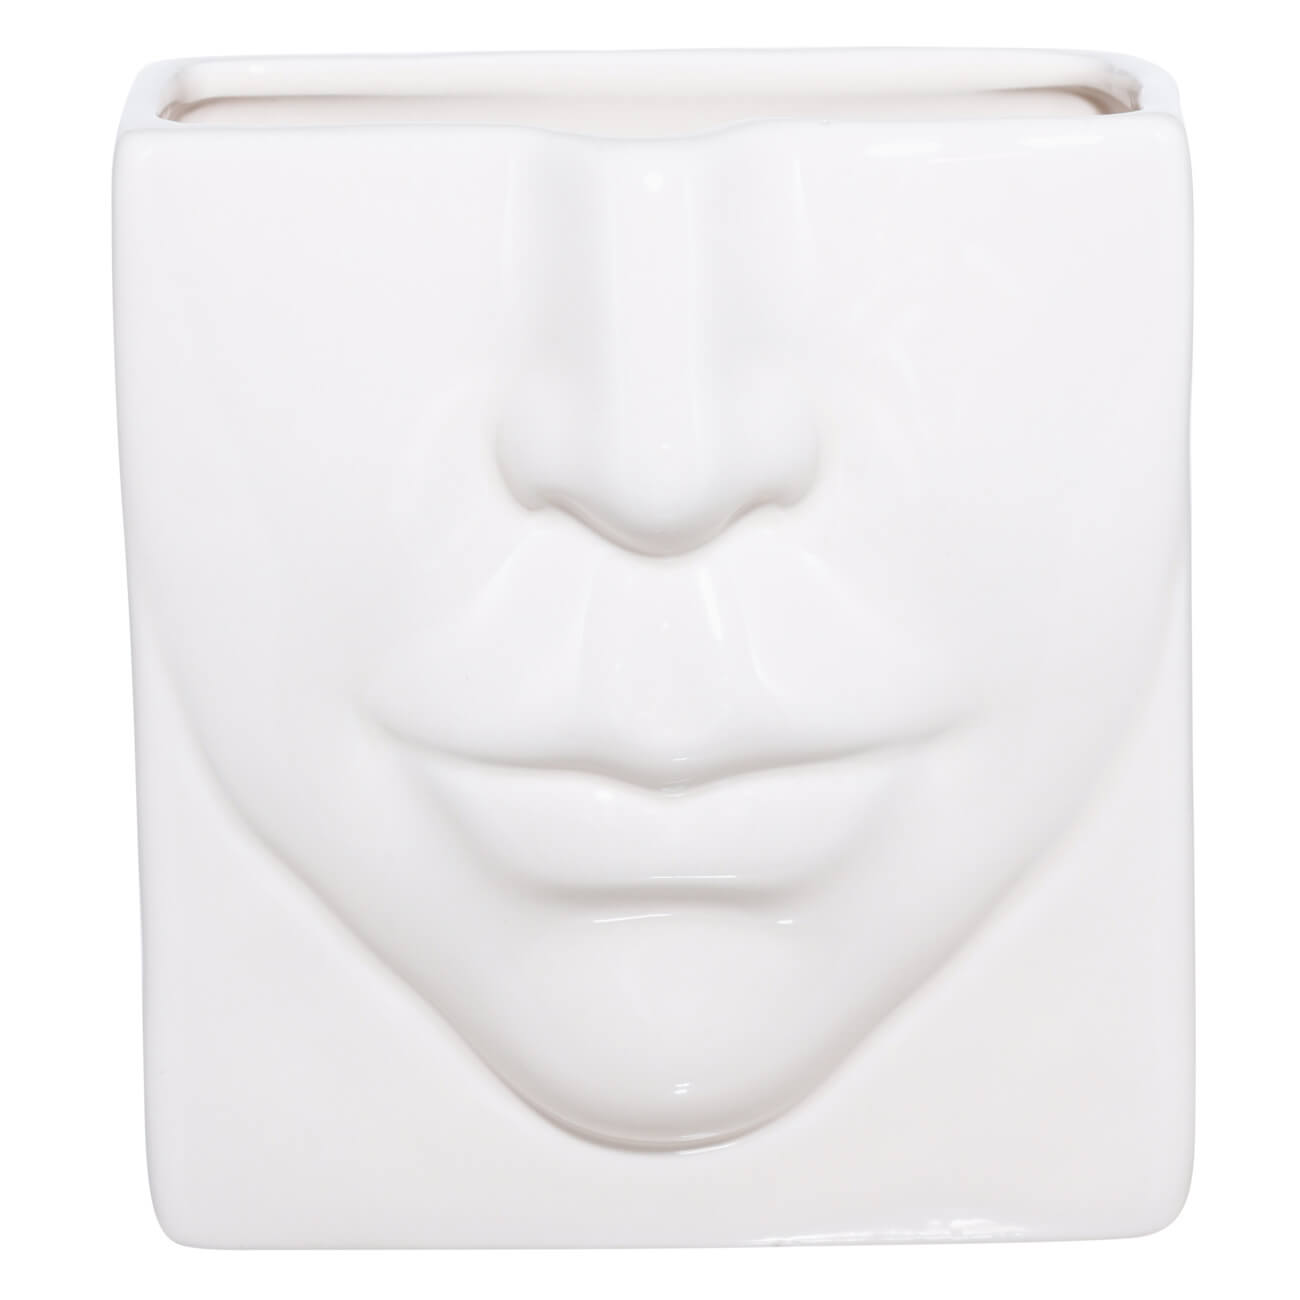 Подставка для косметических кистей, 13х11 см, керамика, молочная, Часть лица, Face